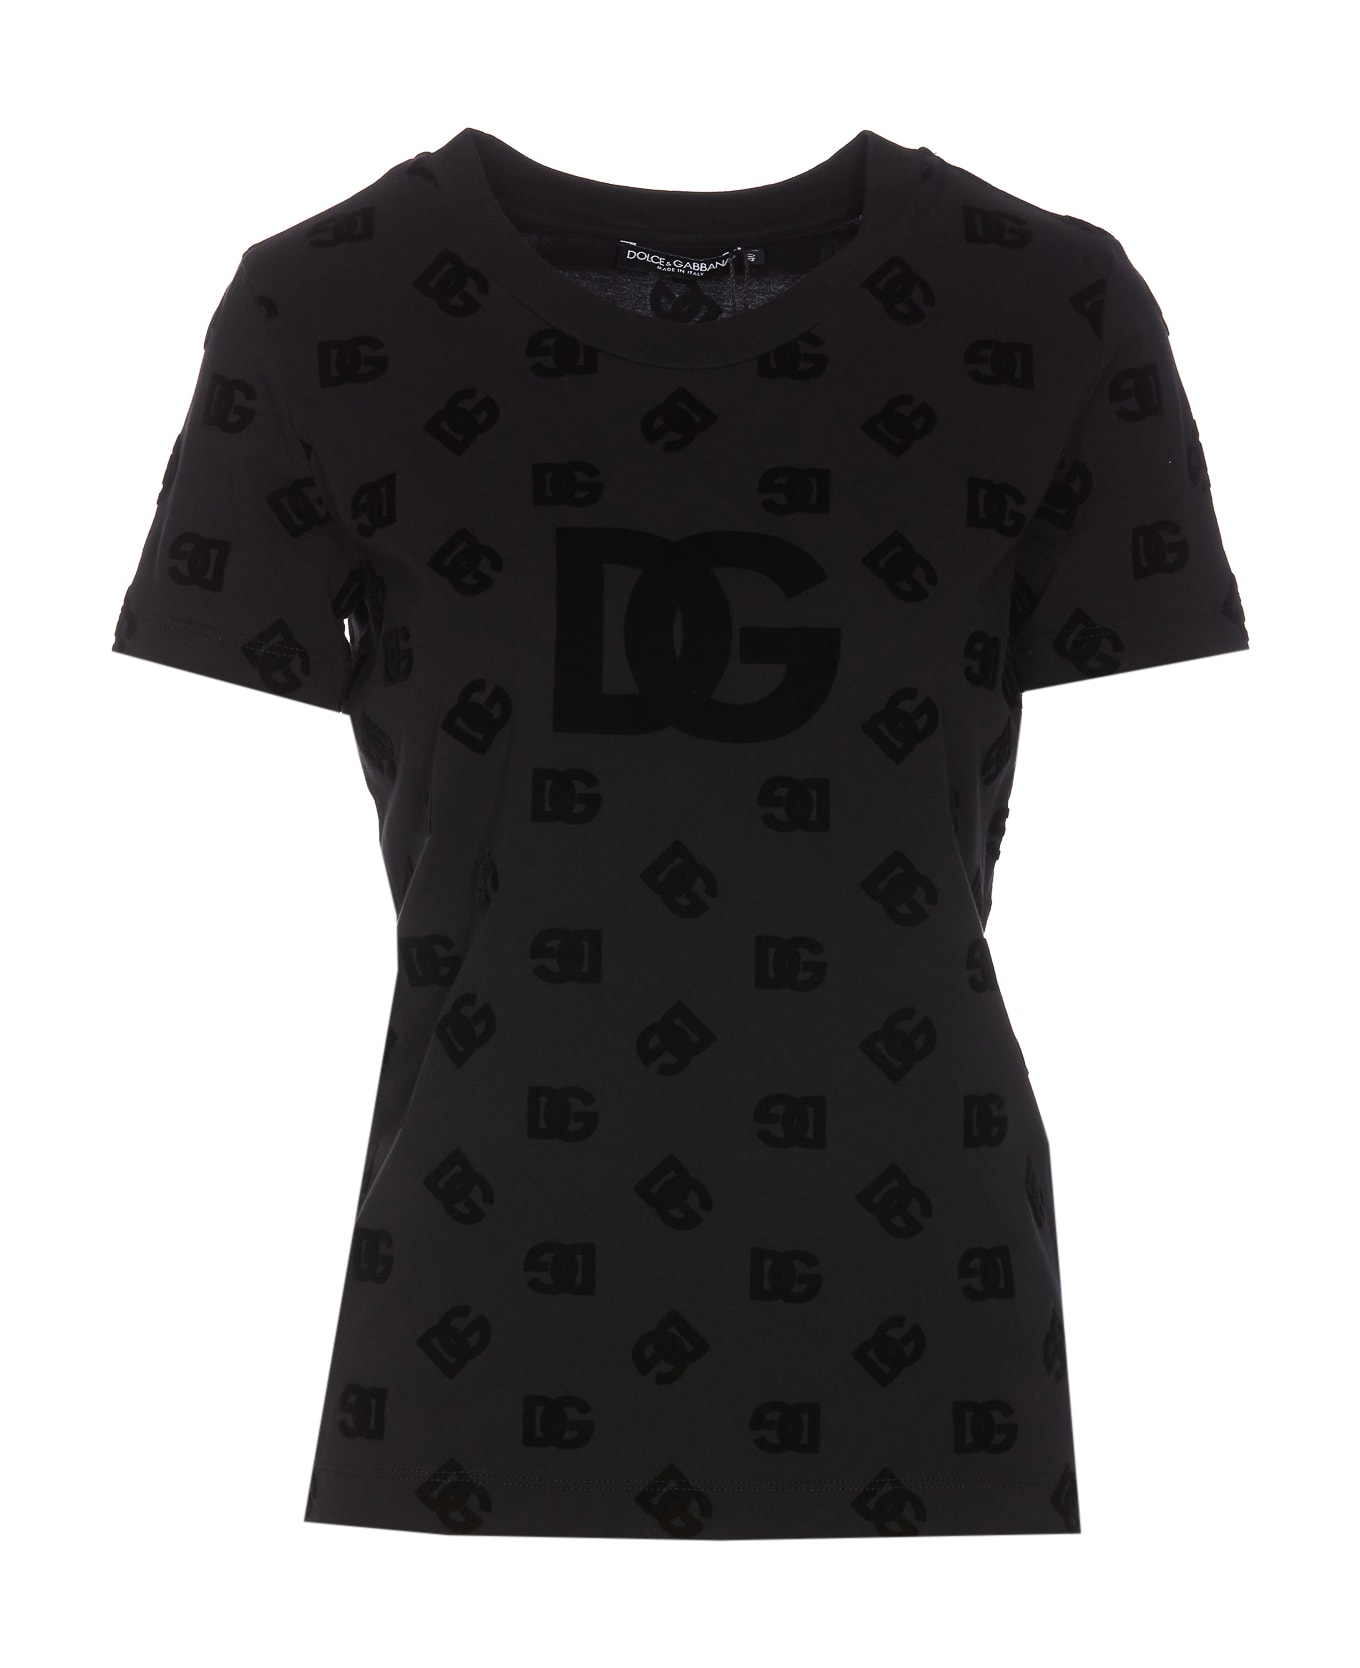 Dolce & Gabbana All Over Flocked Dg Logo T-shirt